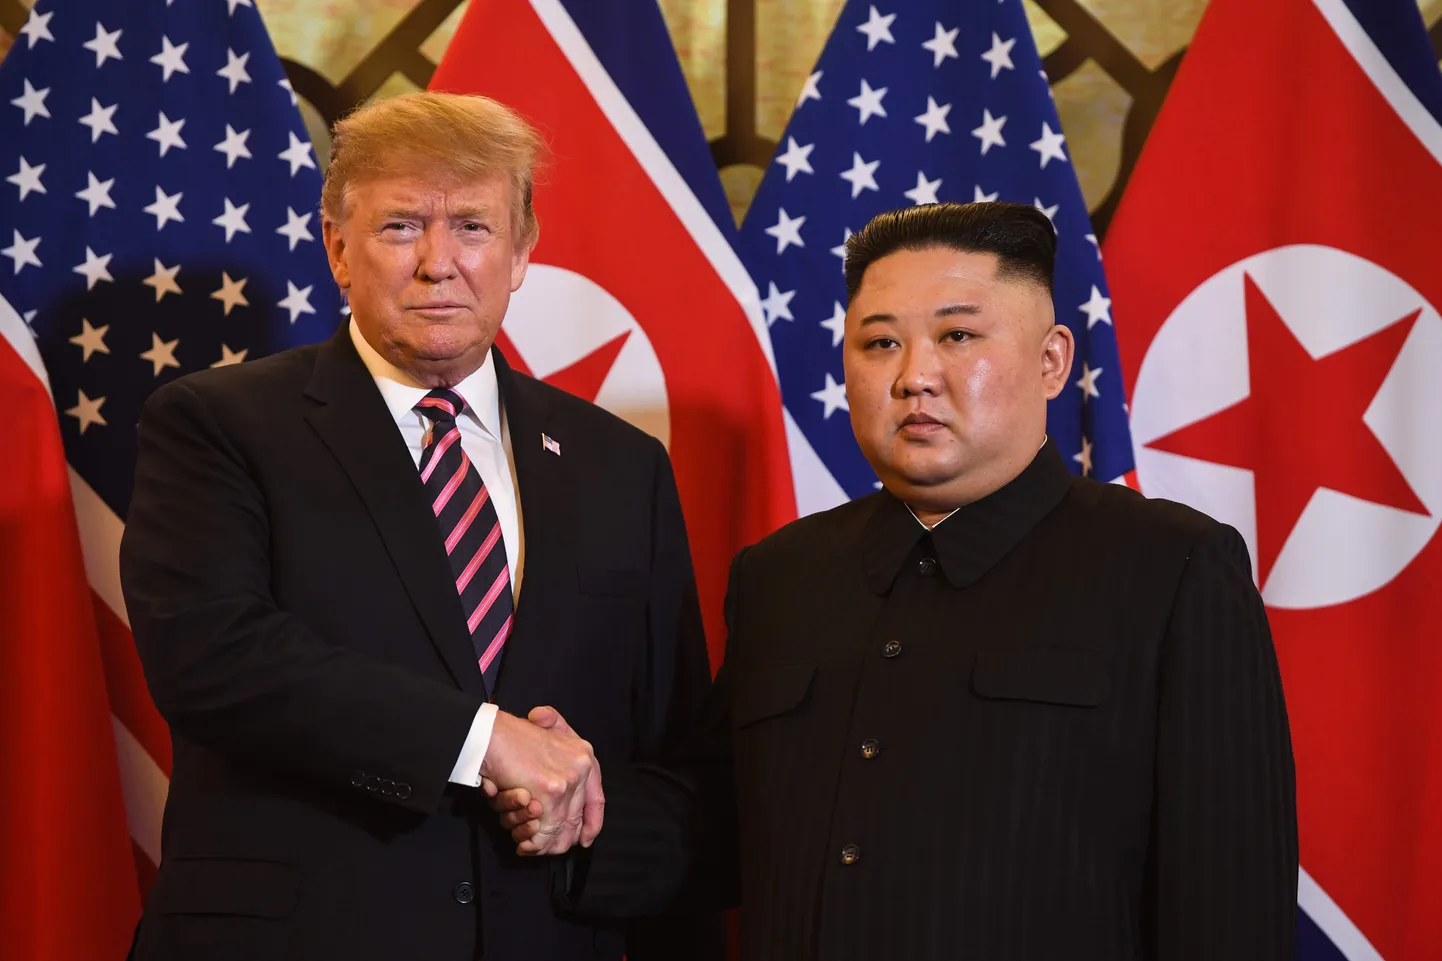 Ameerika Ühendriikide president Donald Trump ja Põhja-Korea liider Kim Jong-un kohtusid täna Vietnamis.